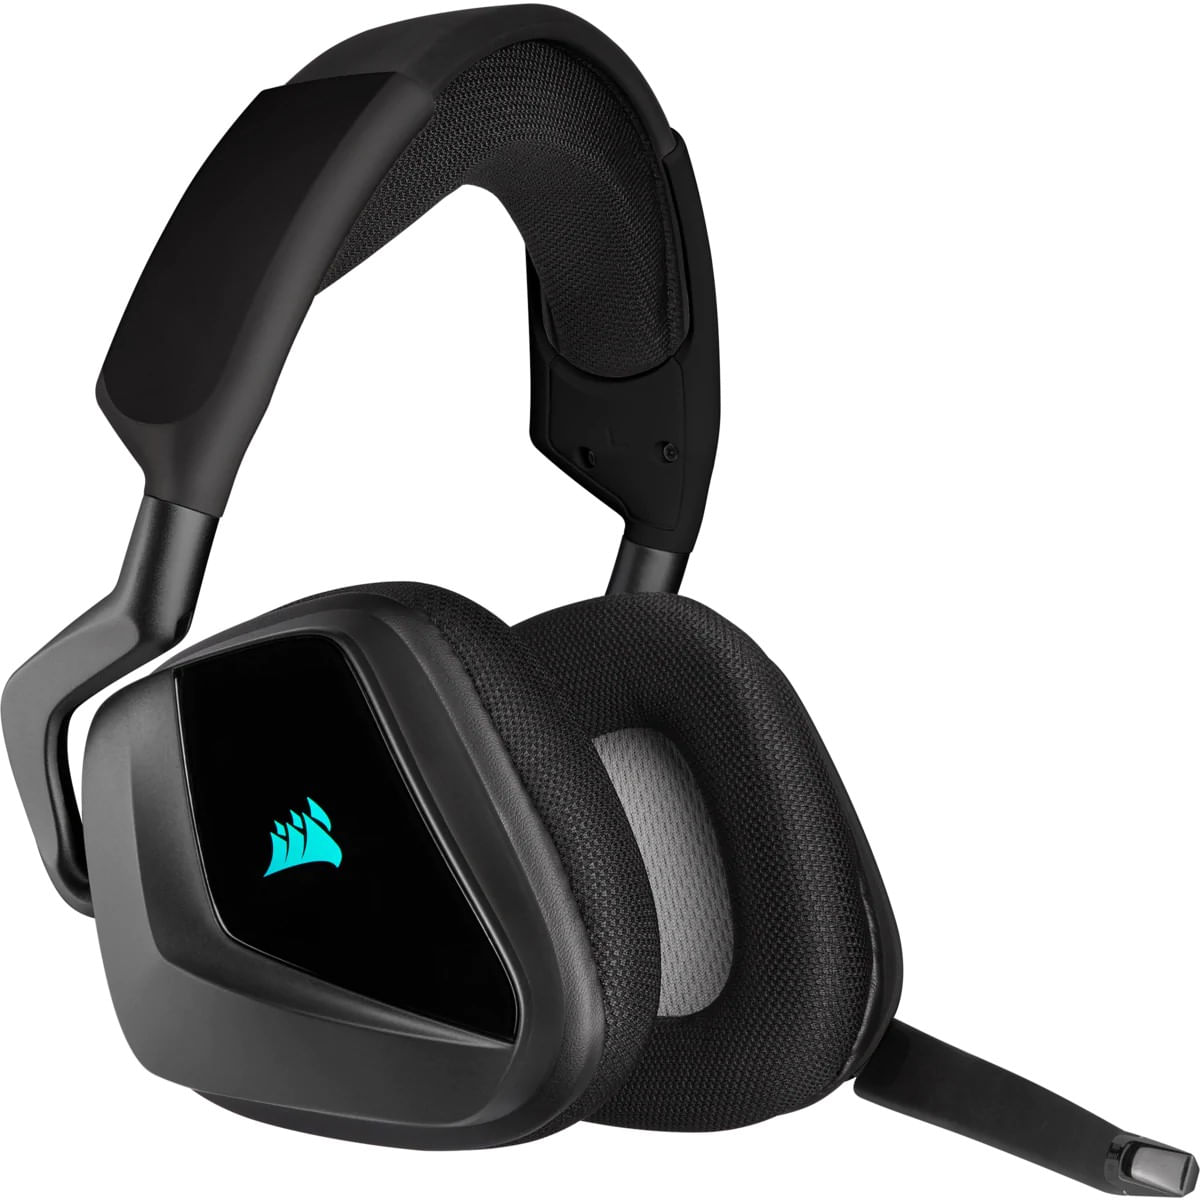 Auriculares Corsair Gamer VOID RGB ELITE Wireless Premium Headset with 7.1 Surround - CA-9011201-NA